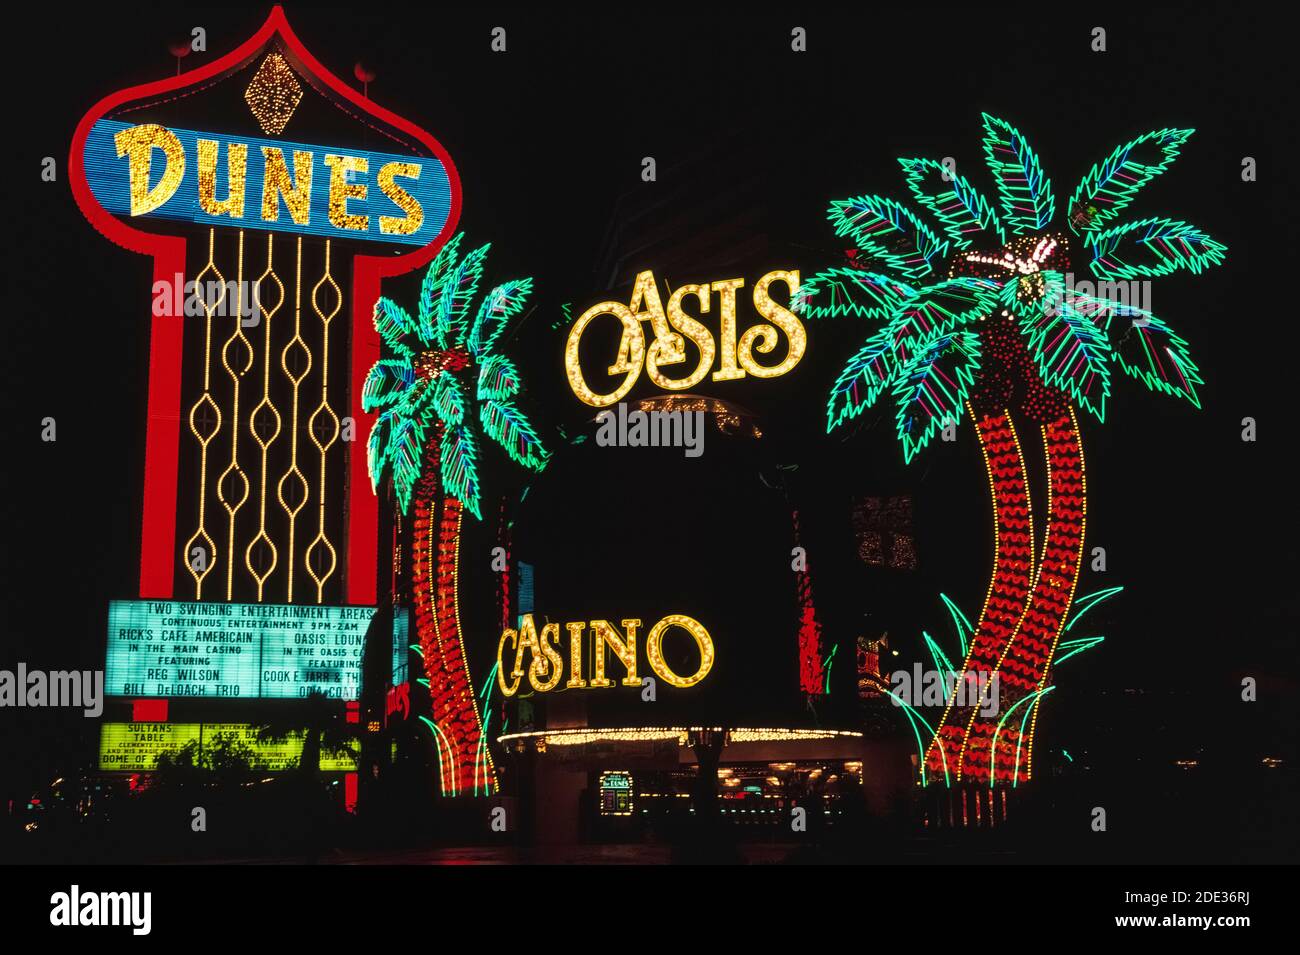 Al neon e ad altre luci colorate, queste insegne all'aperto per il Dunes Hotel e il suo Casinò Oasis si distinguono di notte lungo Las Vegas Boulevard, meglio conosciuto come Strip, una strada fiancheggiata da spettacolari hotel e casinò a sud dei confini della città di Las Vegas, Nevada, USA. Le dune aprirono nel 1955, una delle prime attrazioni di questa famigerata destinazione desertica, famosa per il suo gioco d'azzardo e i suoi bei tempi. Quando l'hotel fu demolito nel 1993 per fare spazio al nuovo mega resort Bellagio, questi segni distintivi e palme al neon furono perduti nella storia. Foto Stock